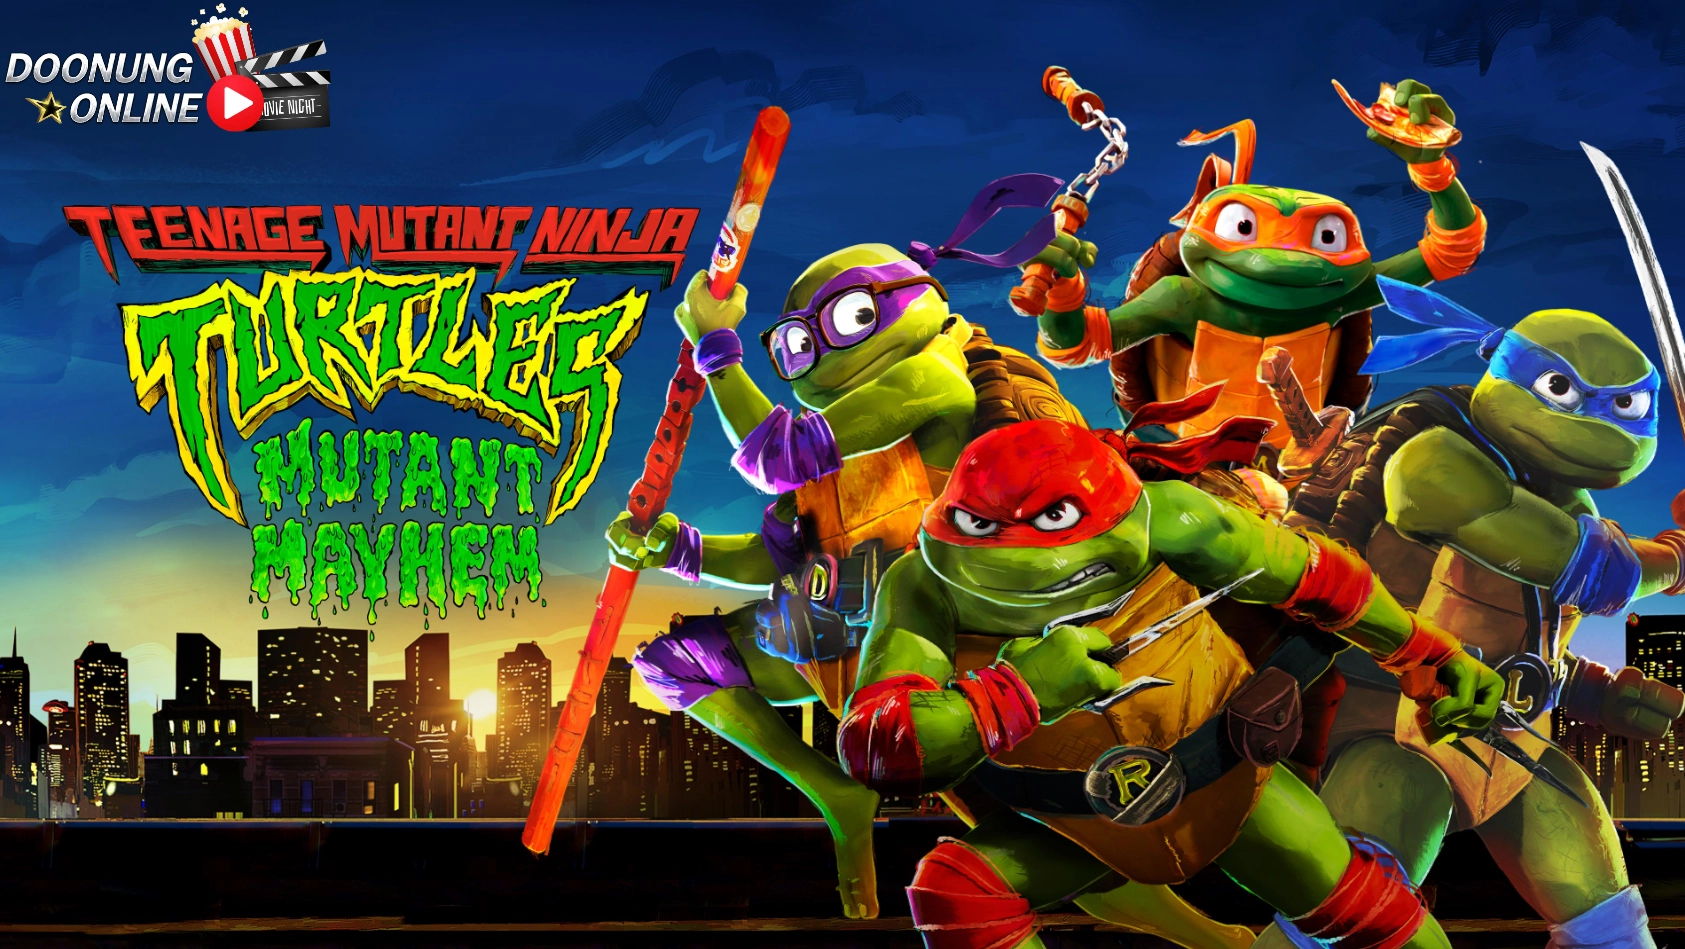 รีวิว Teenage Mutant Ninja Turtles Mutant Mayhem - การรีบูตซูเปอร์ฮีโรนินจาเต่าในรูปแบบแอนิเมชั่น ที่มาพร้อมเพลงประกอบสุดฮิปฮอป